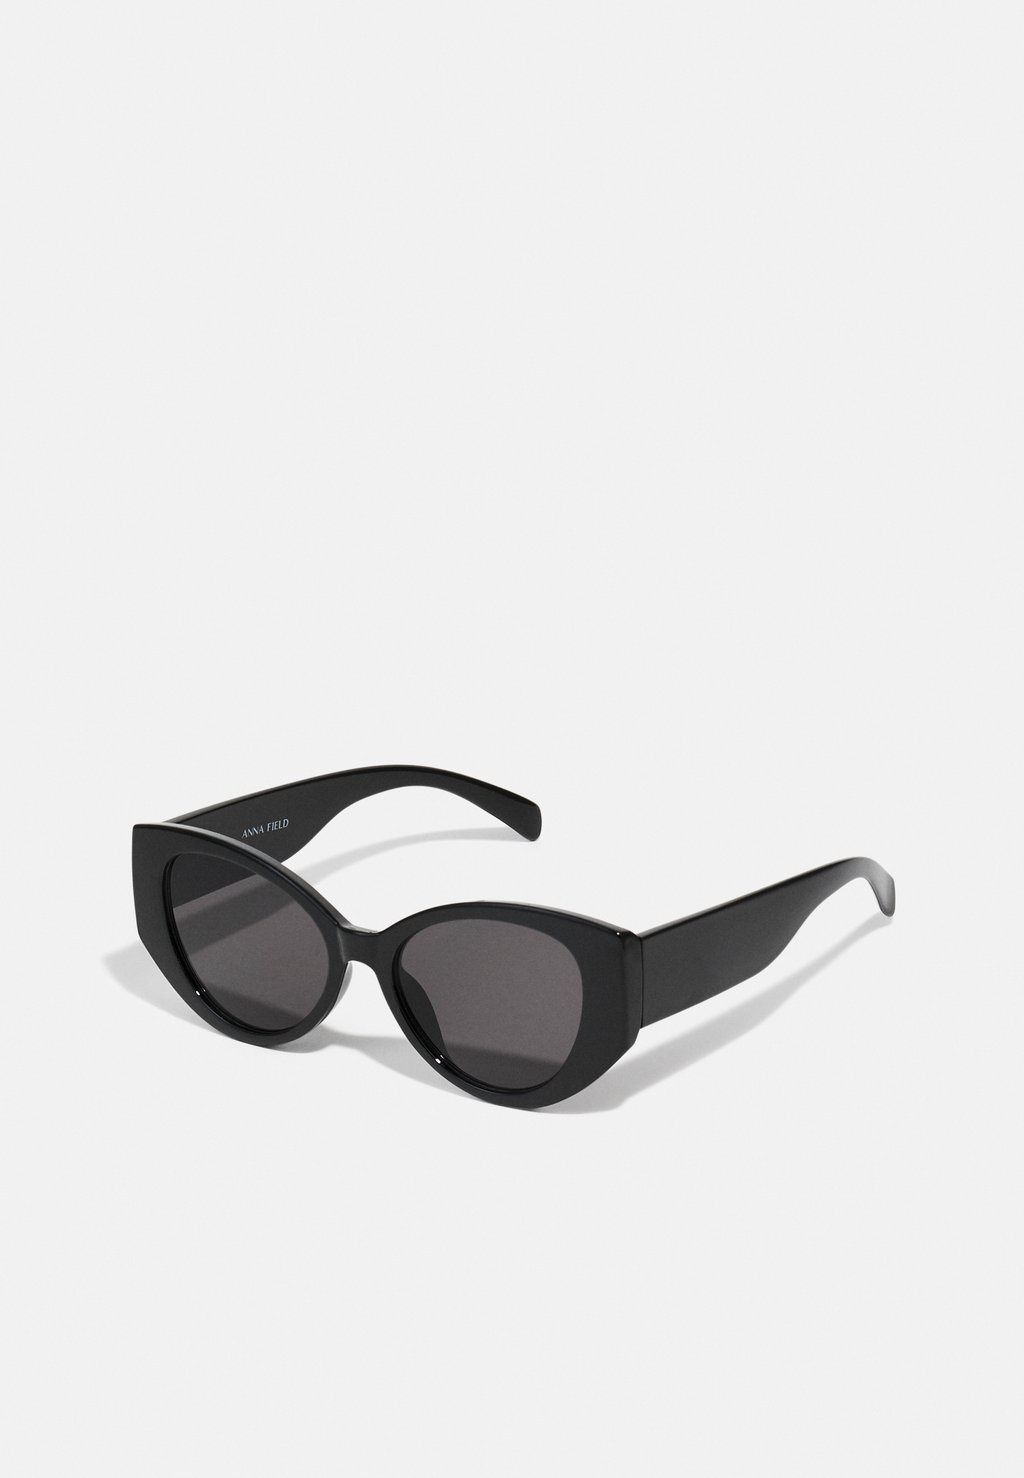 Солнцезащитные очки Anna Field, черные